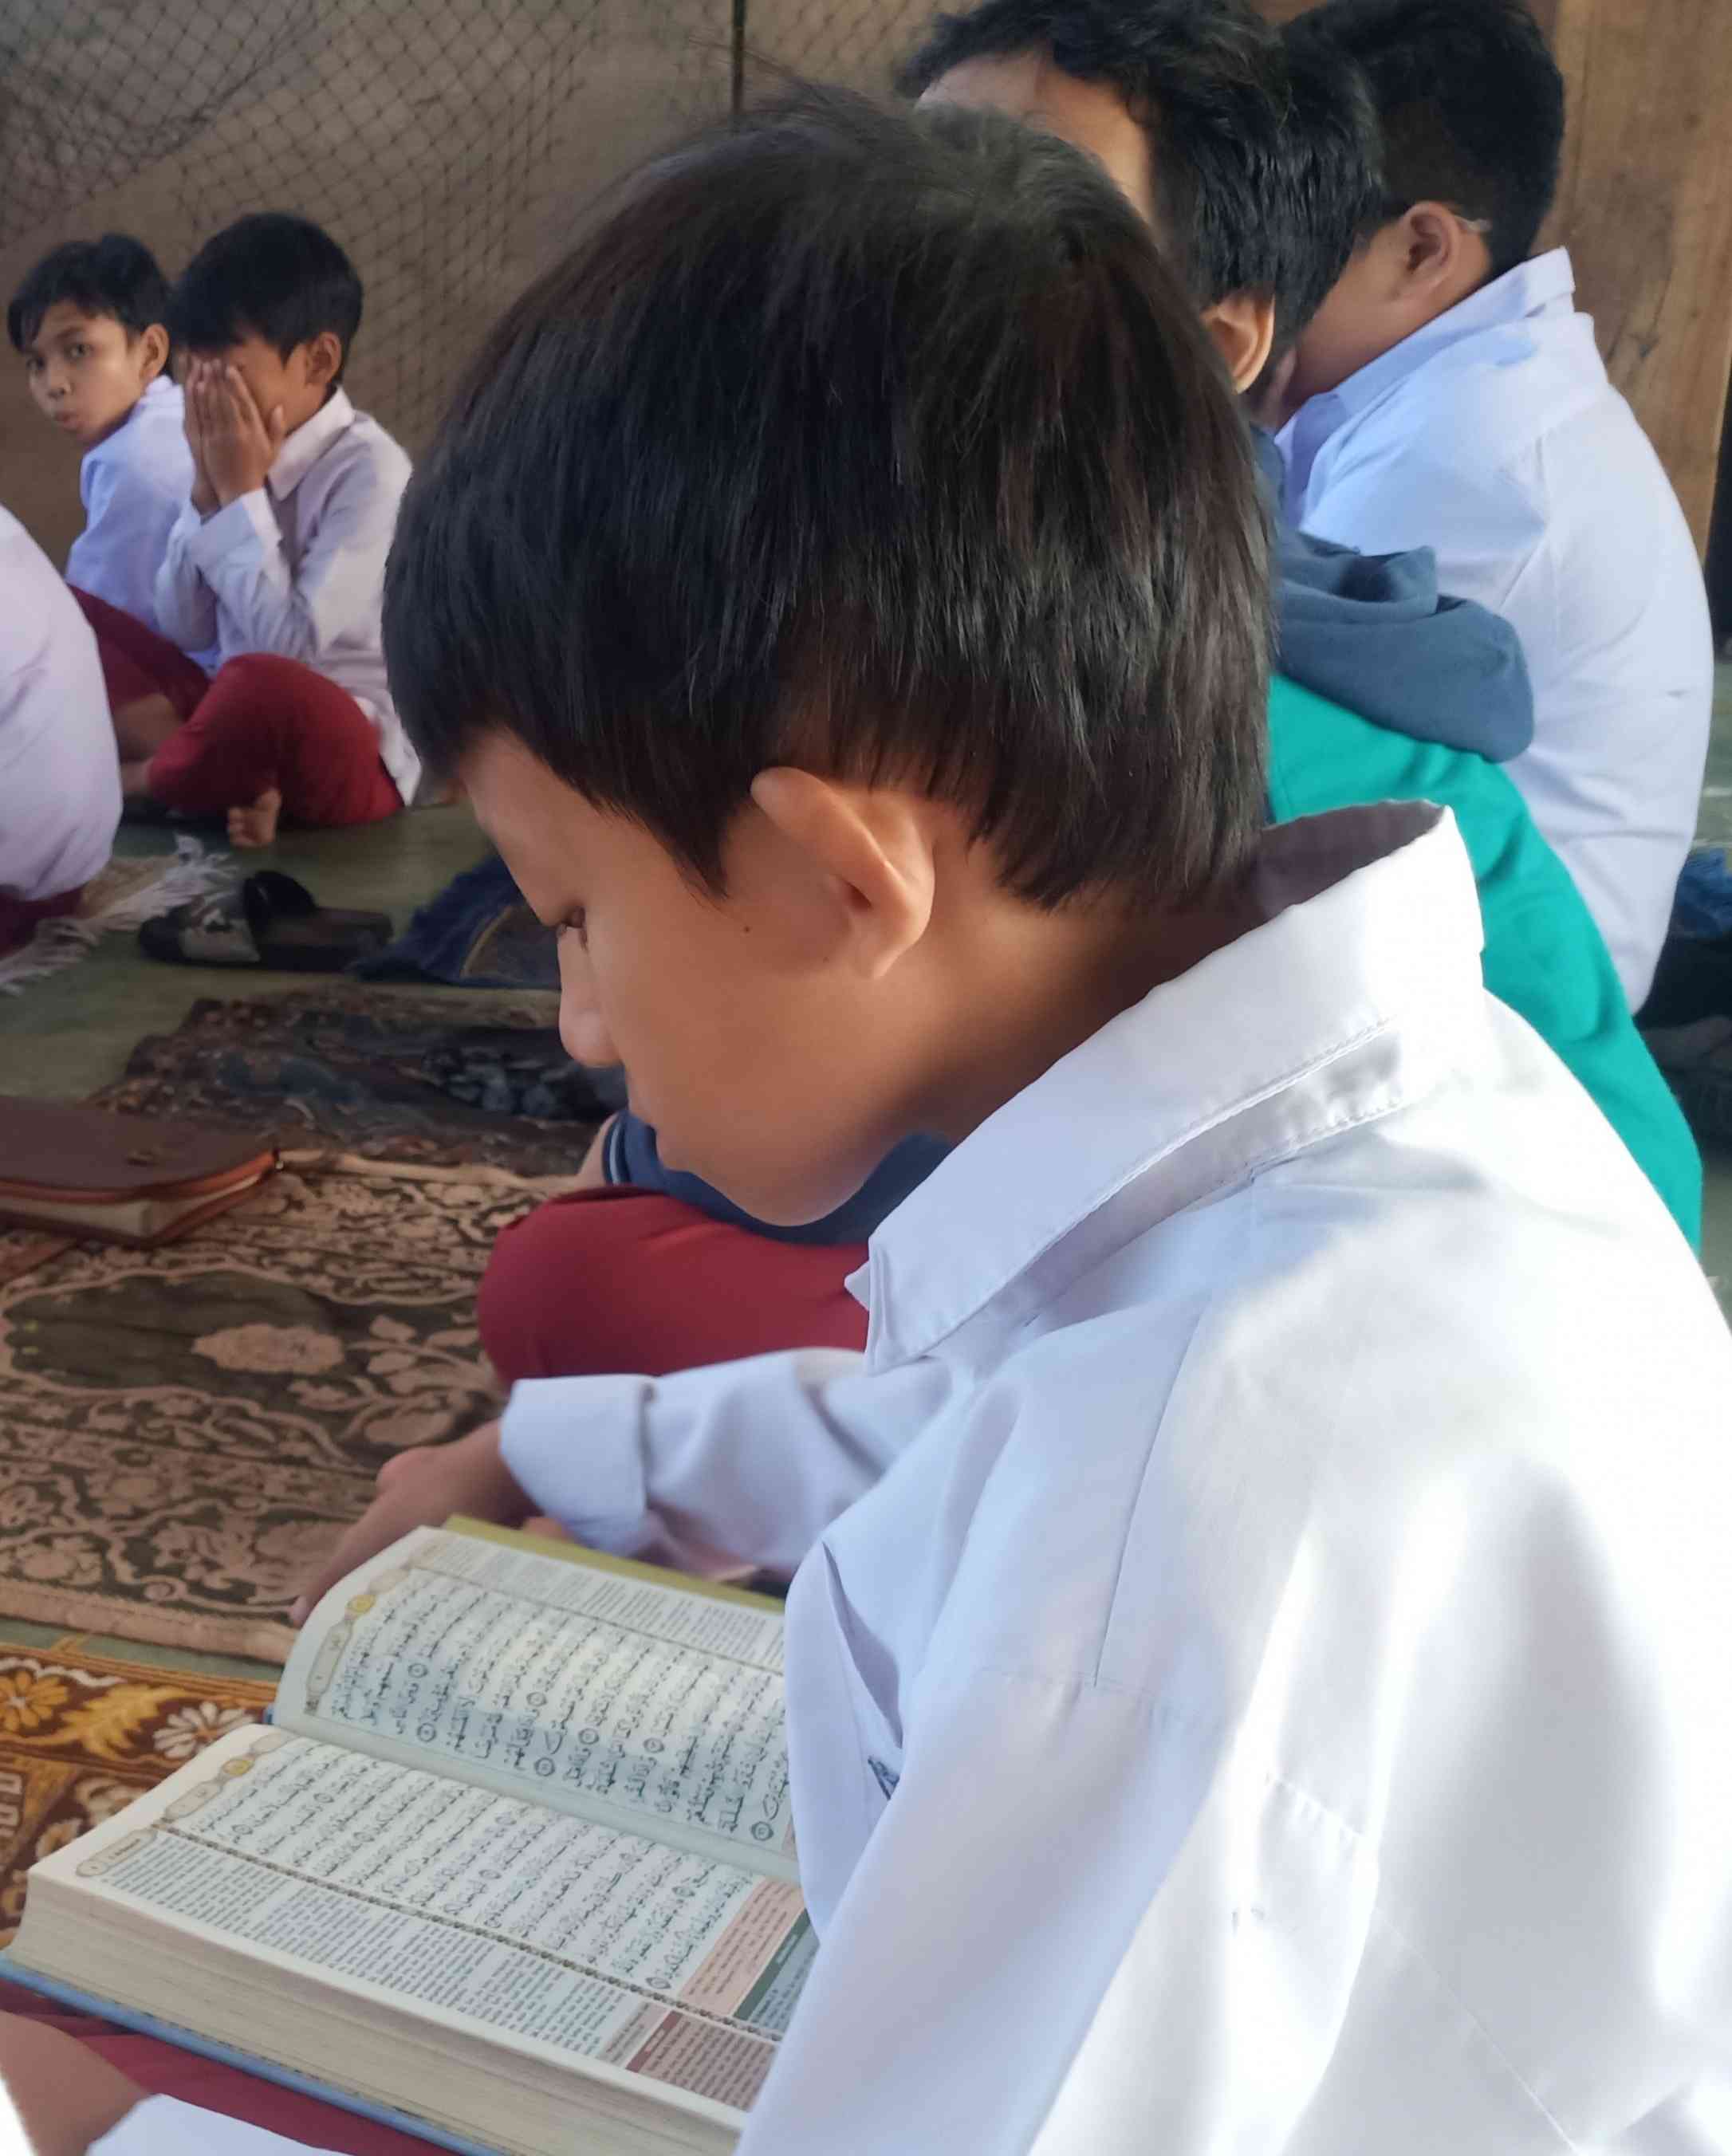 Ilustrasi Seorang Anak sedang Mengaji Al-Qur'an (Foto: Dok. Pribadi)